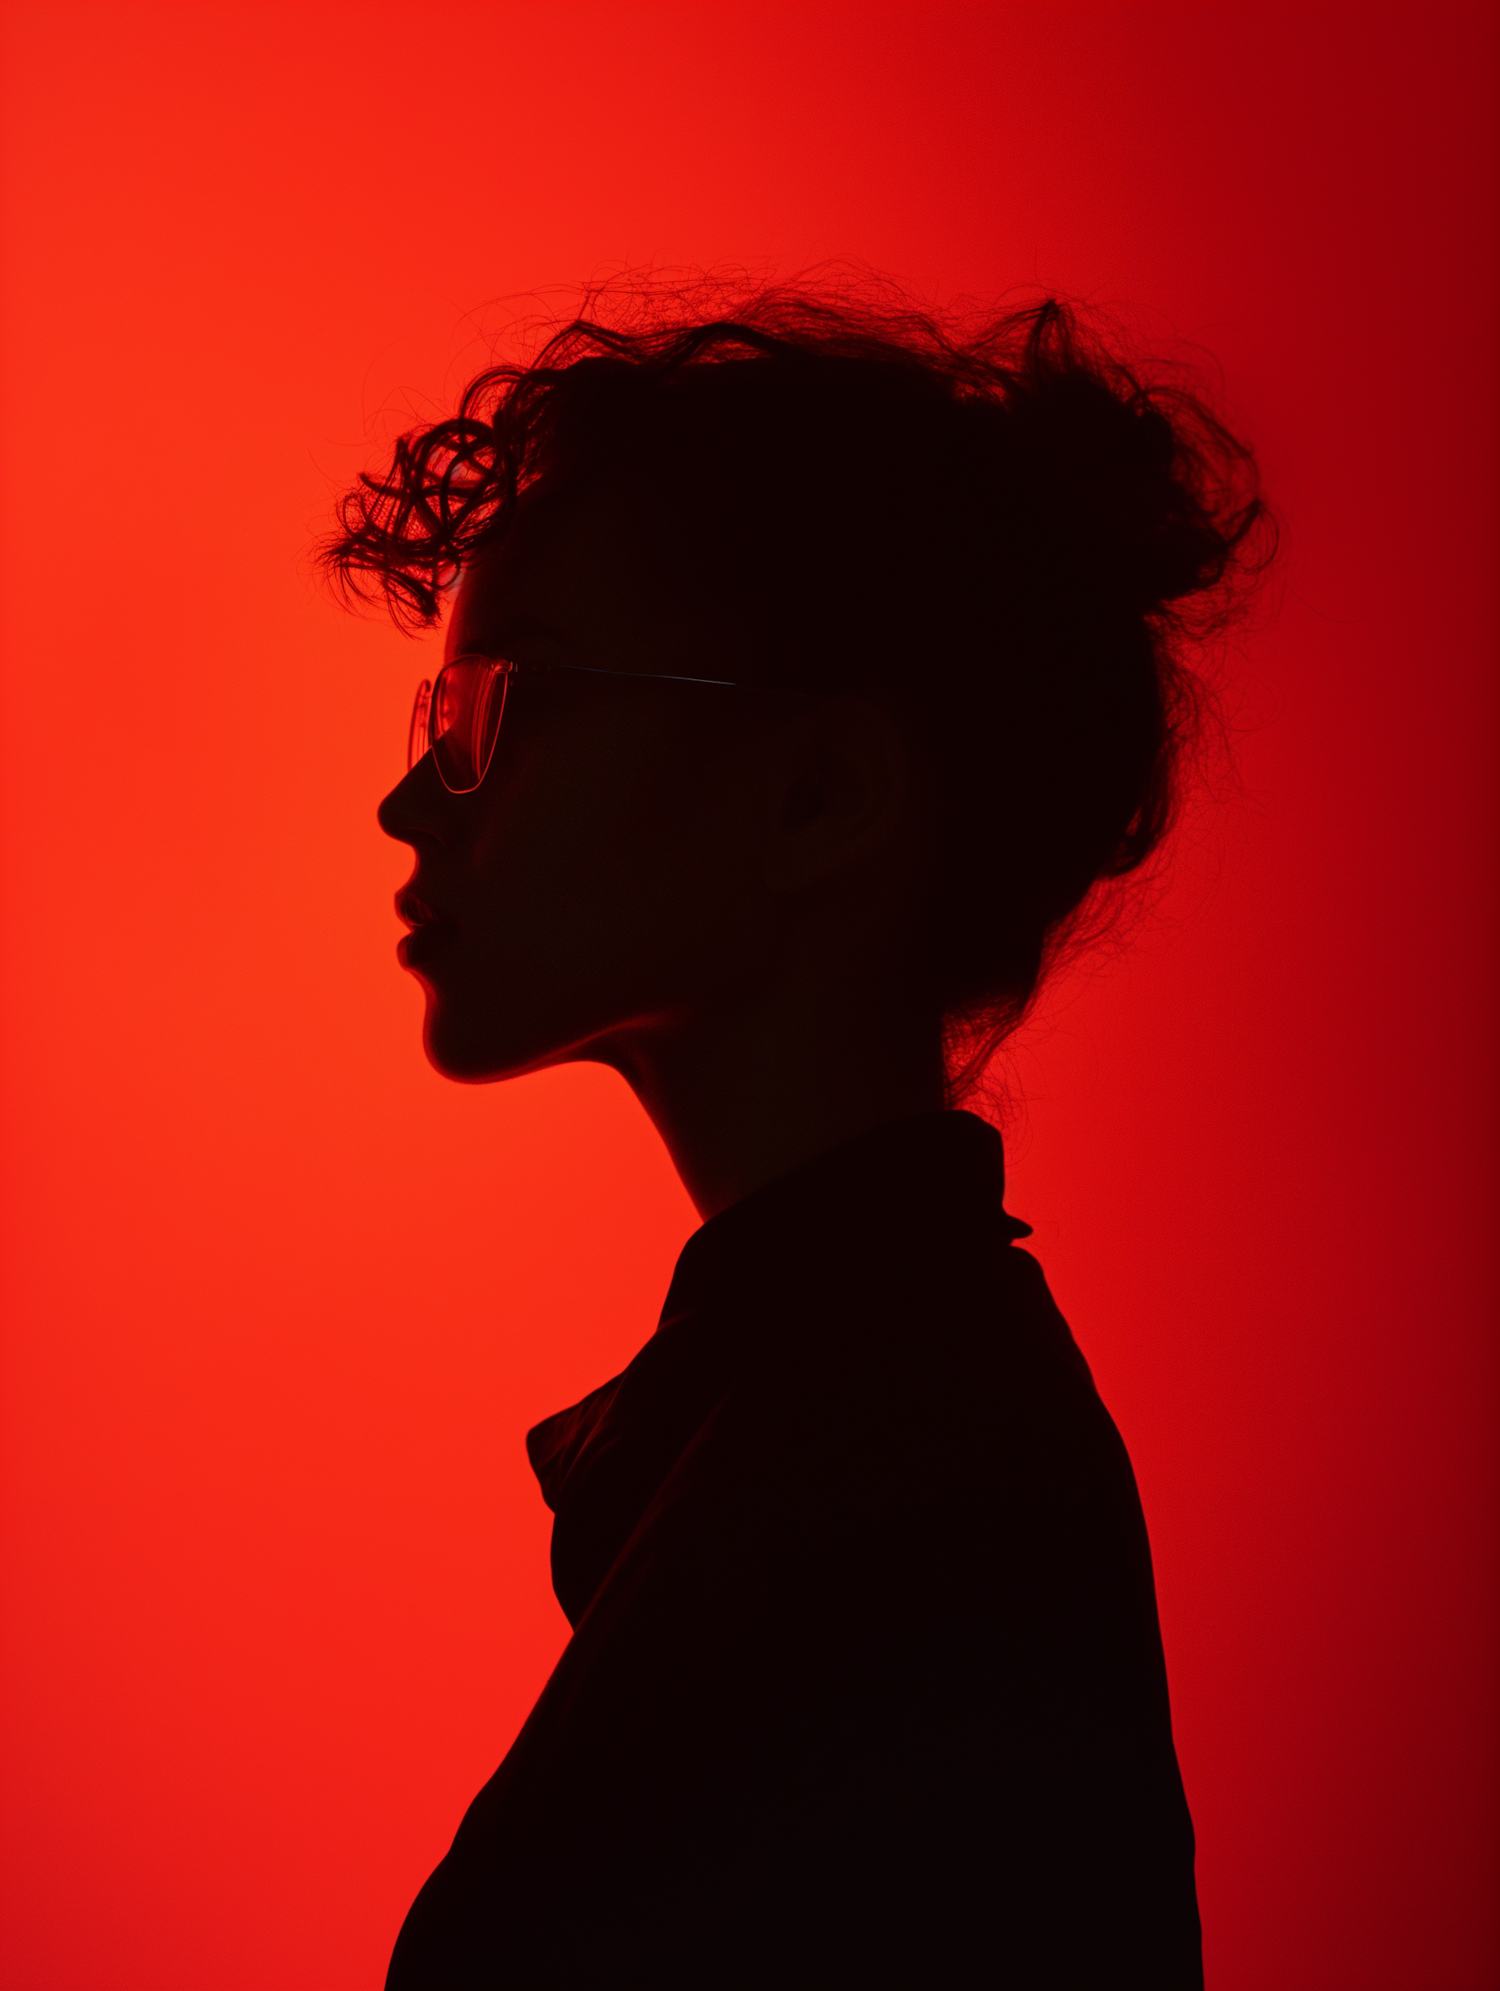 Crimson Contemplation: The Silhouette Profile